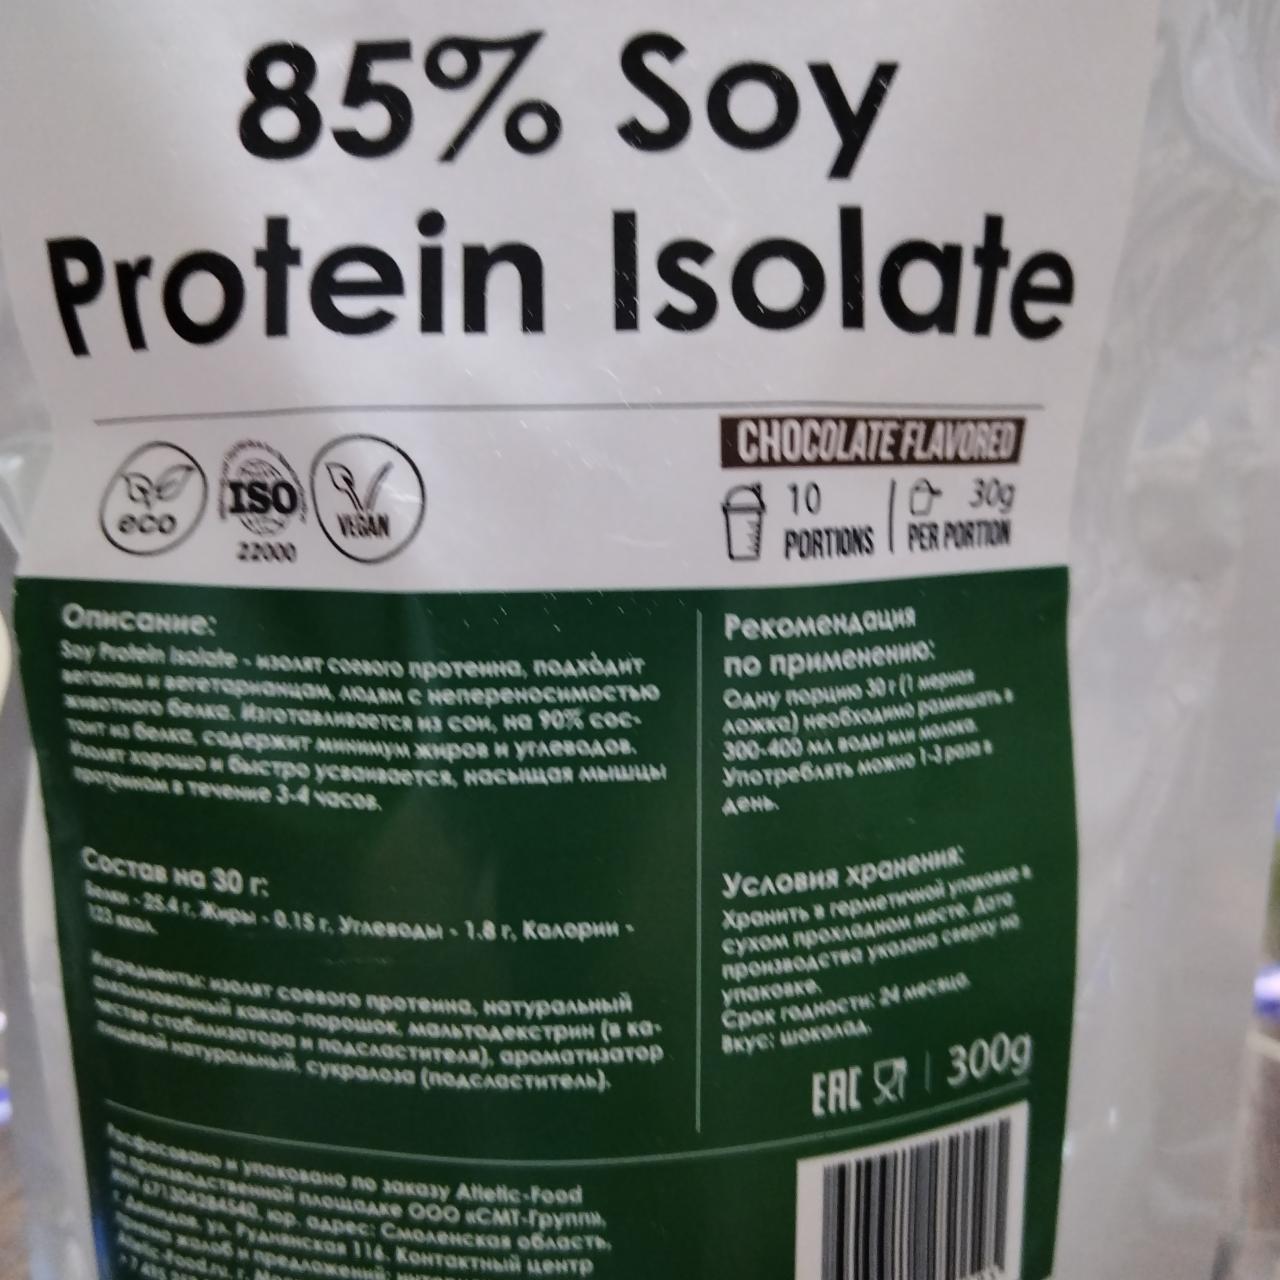 Фото - Soy Protein Isolate изолят соевого протеина Atletic food